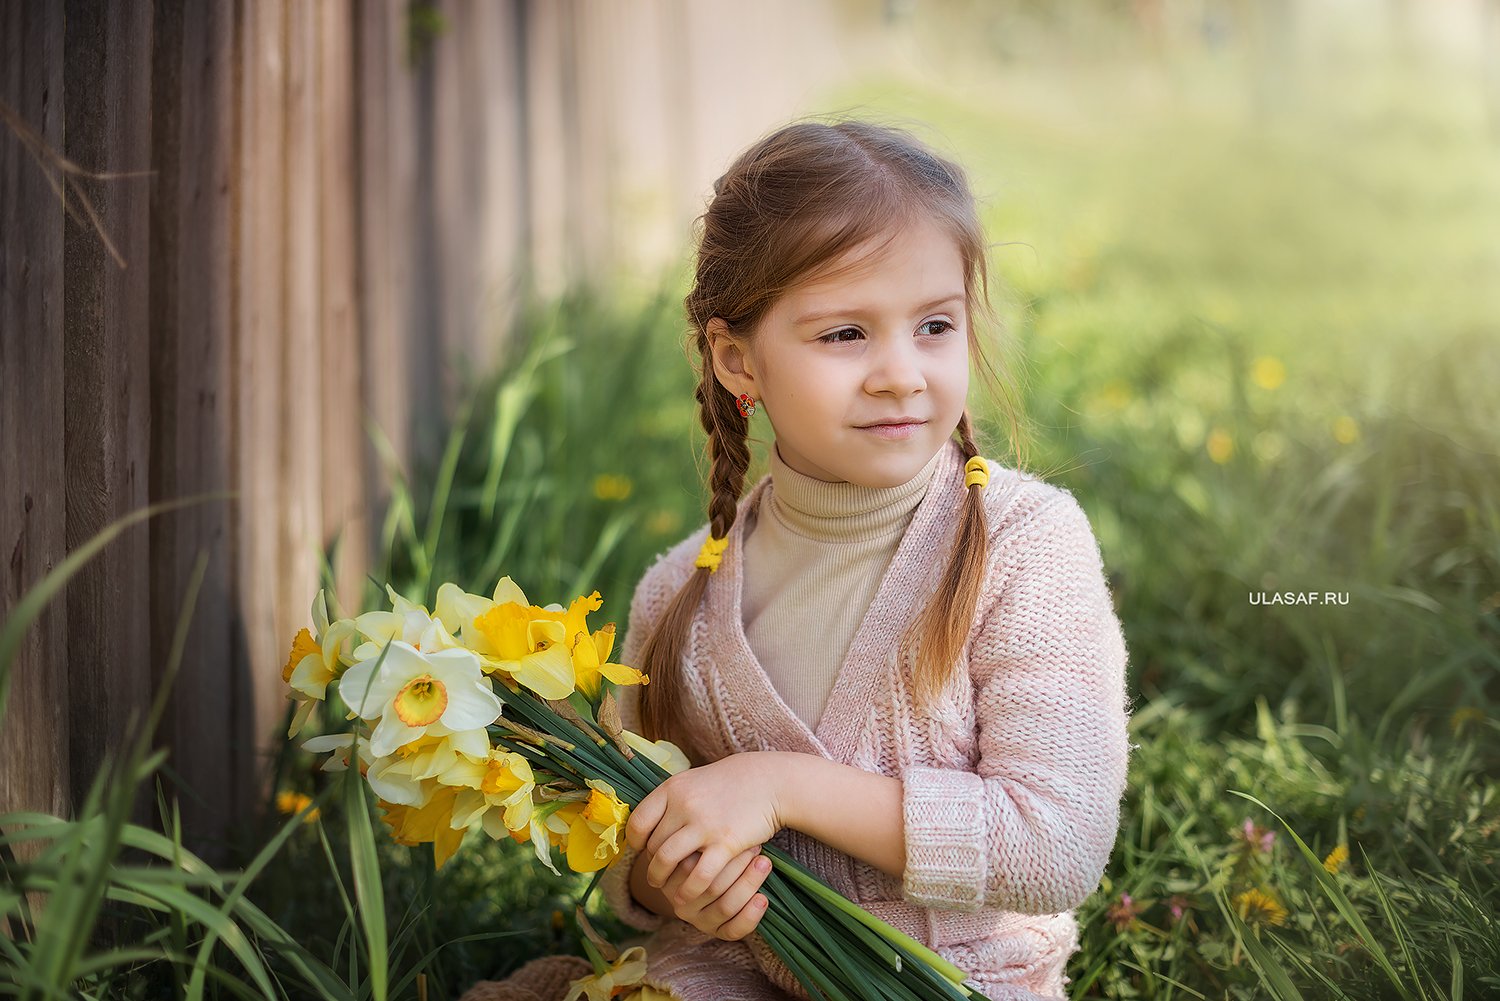 girl, portrait, девочка, портрет, весна, spring,тюльпаны, цветы, Юлия Сафонова